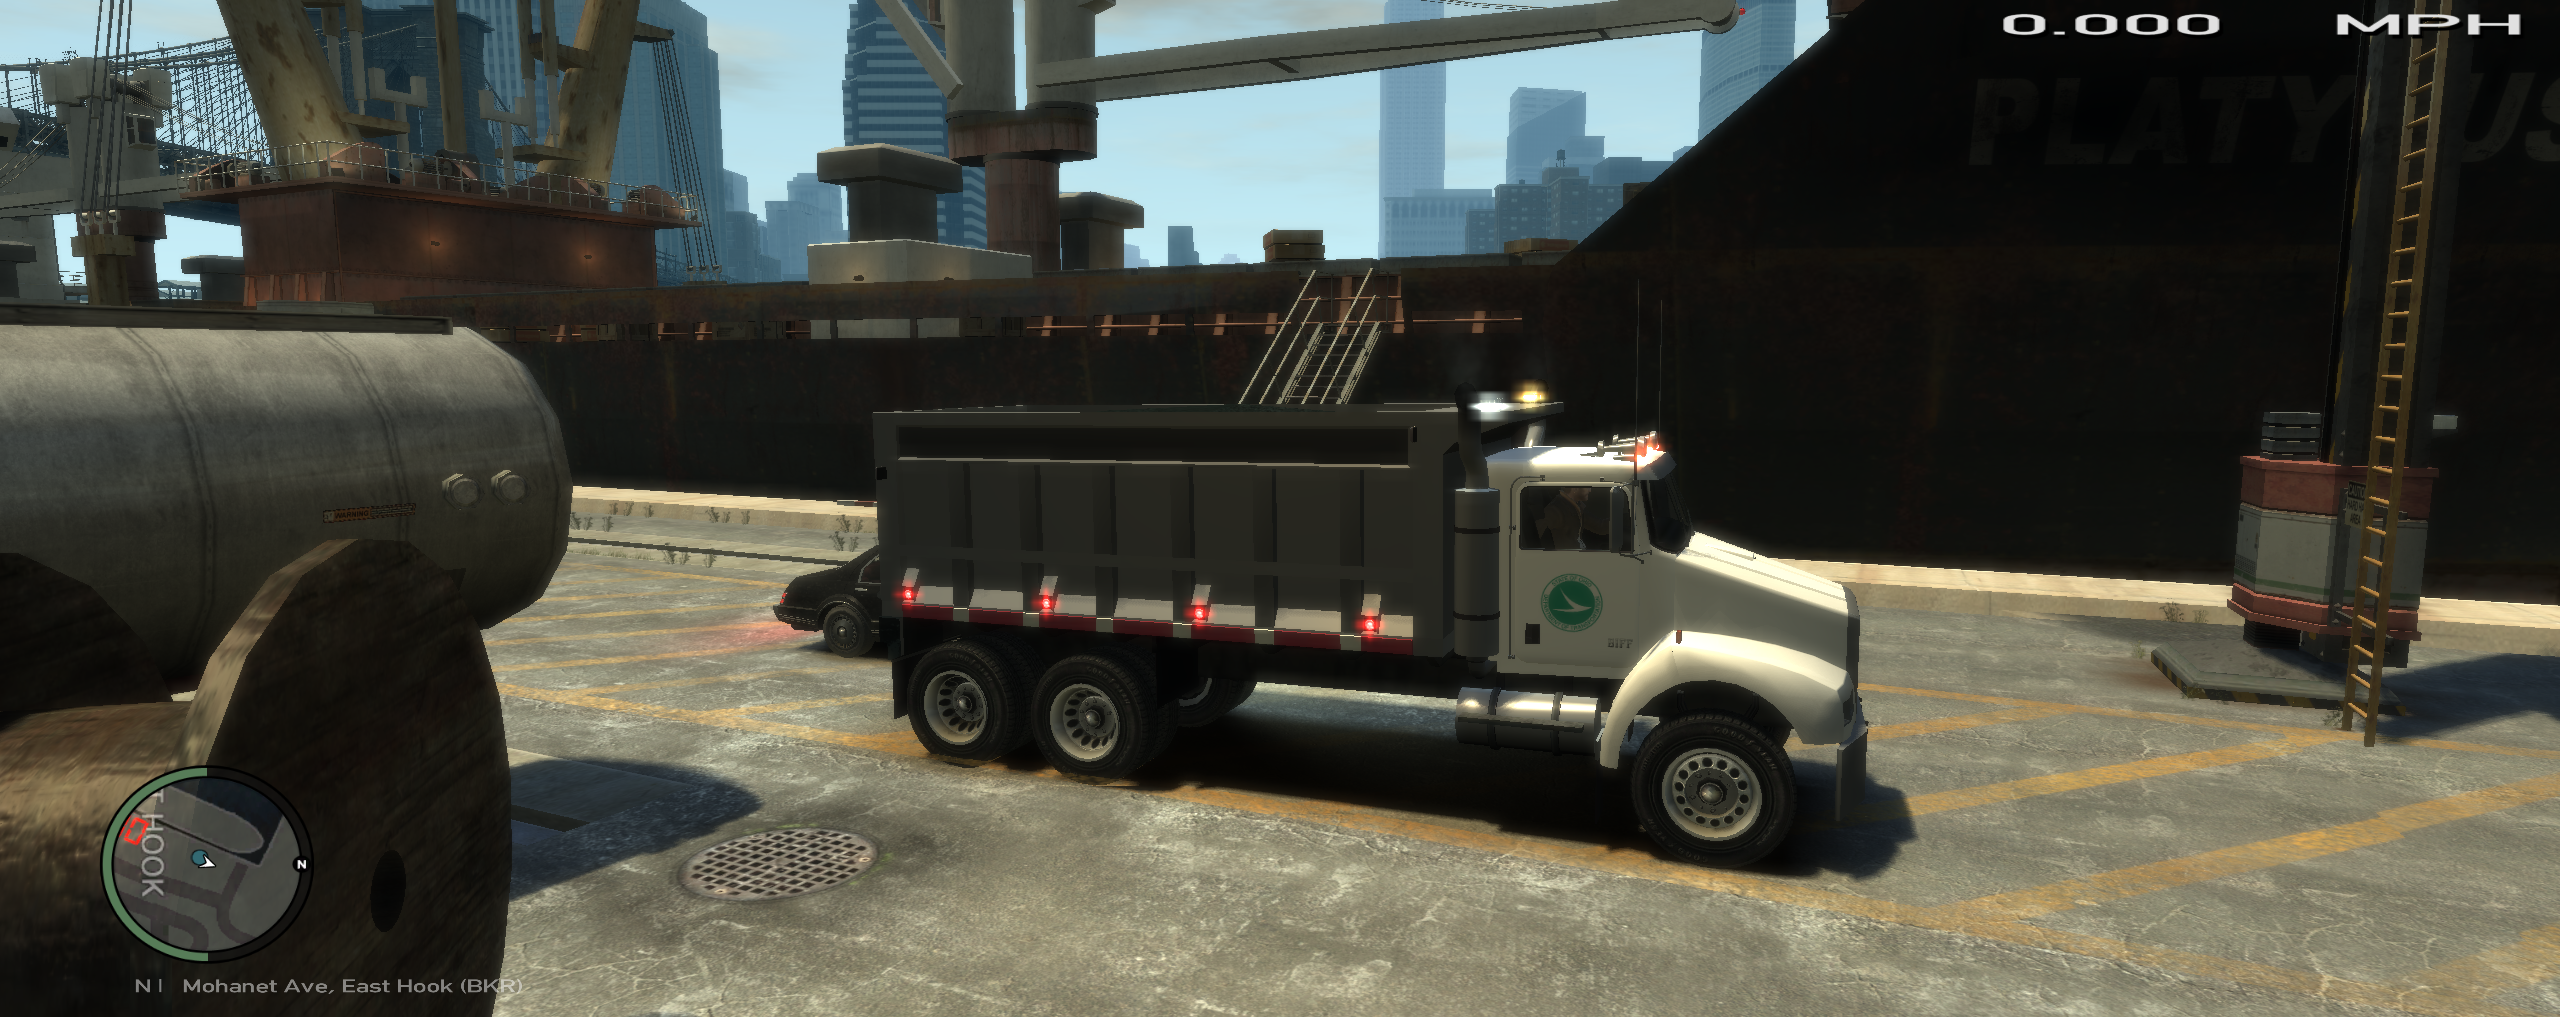 gta 5 dump truck